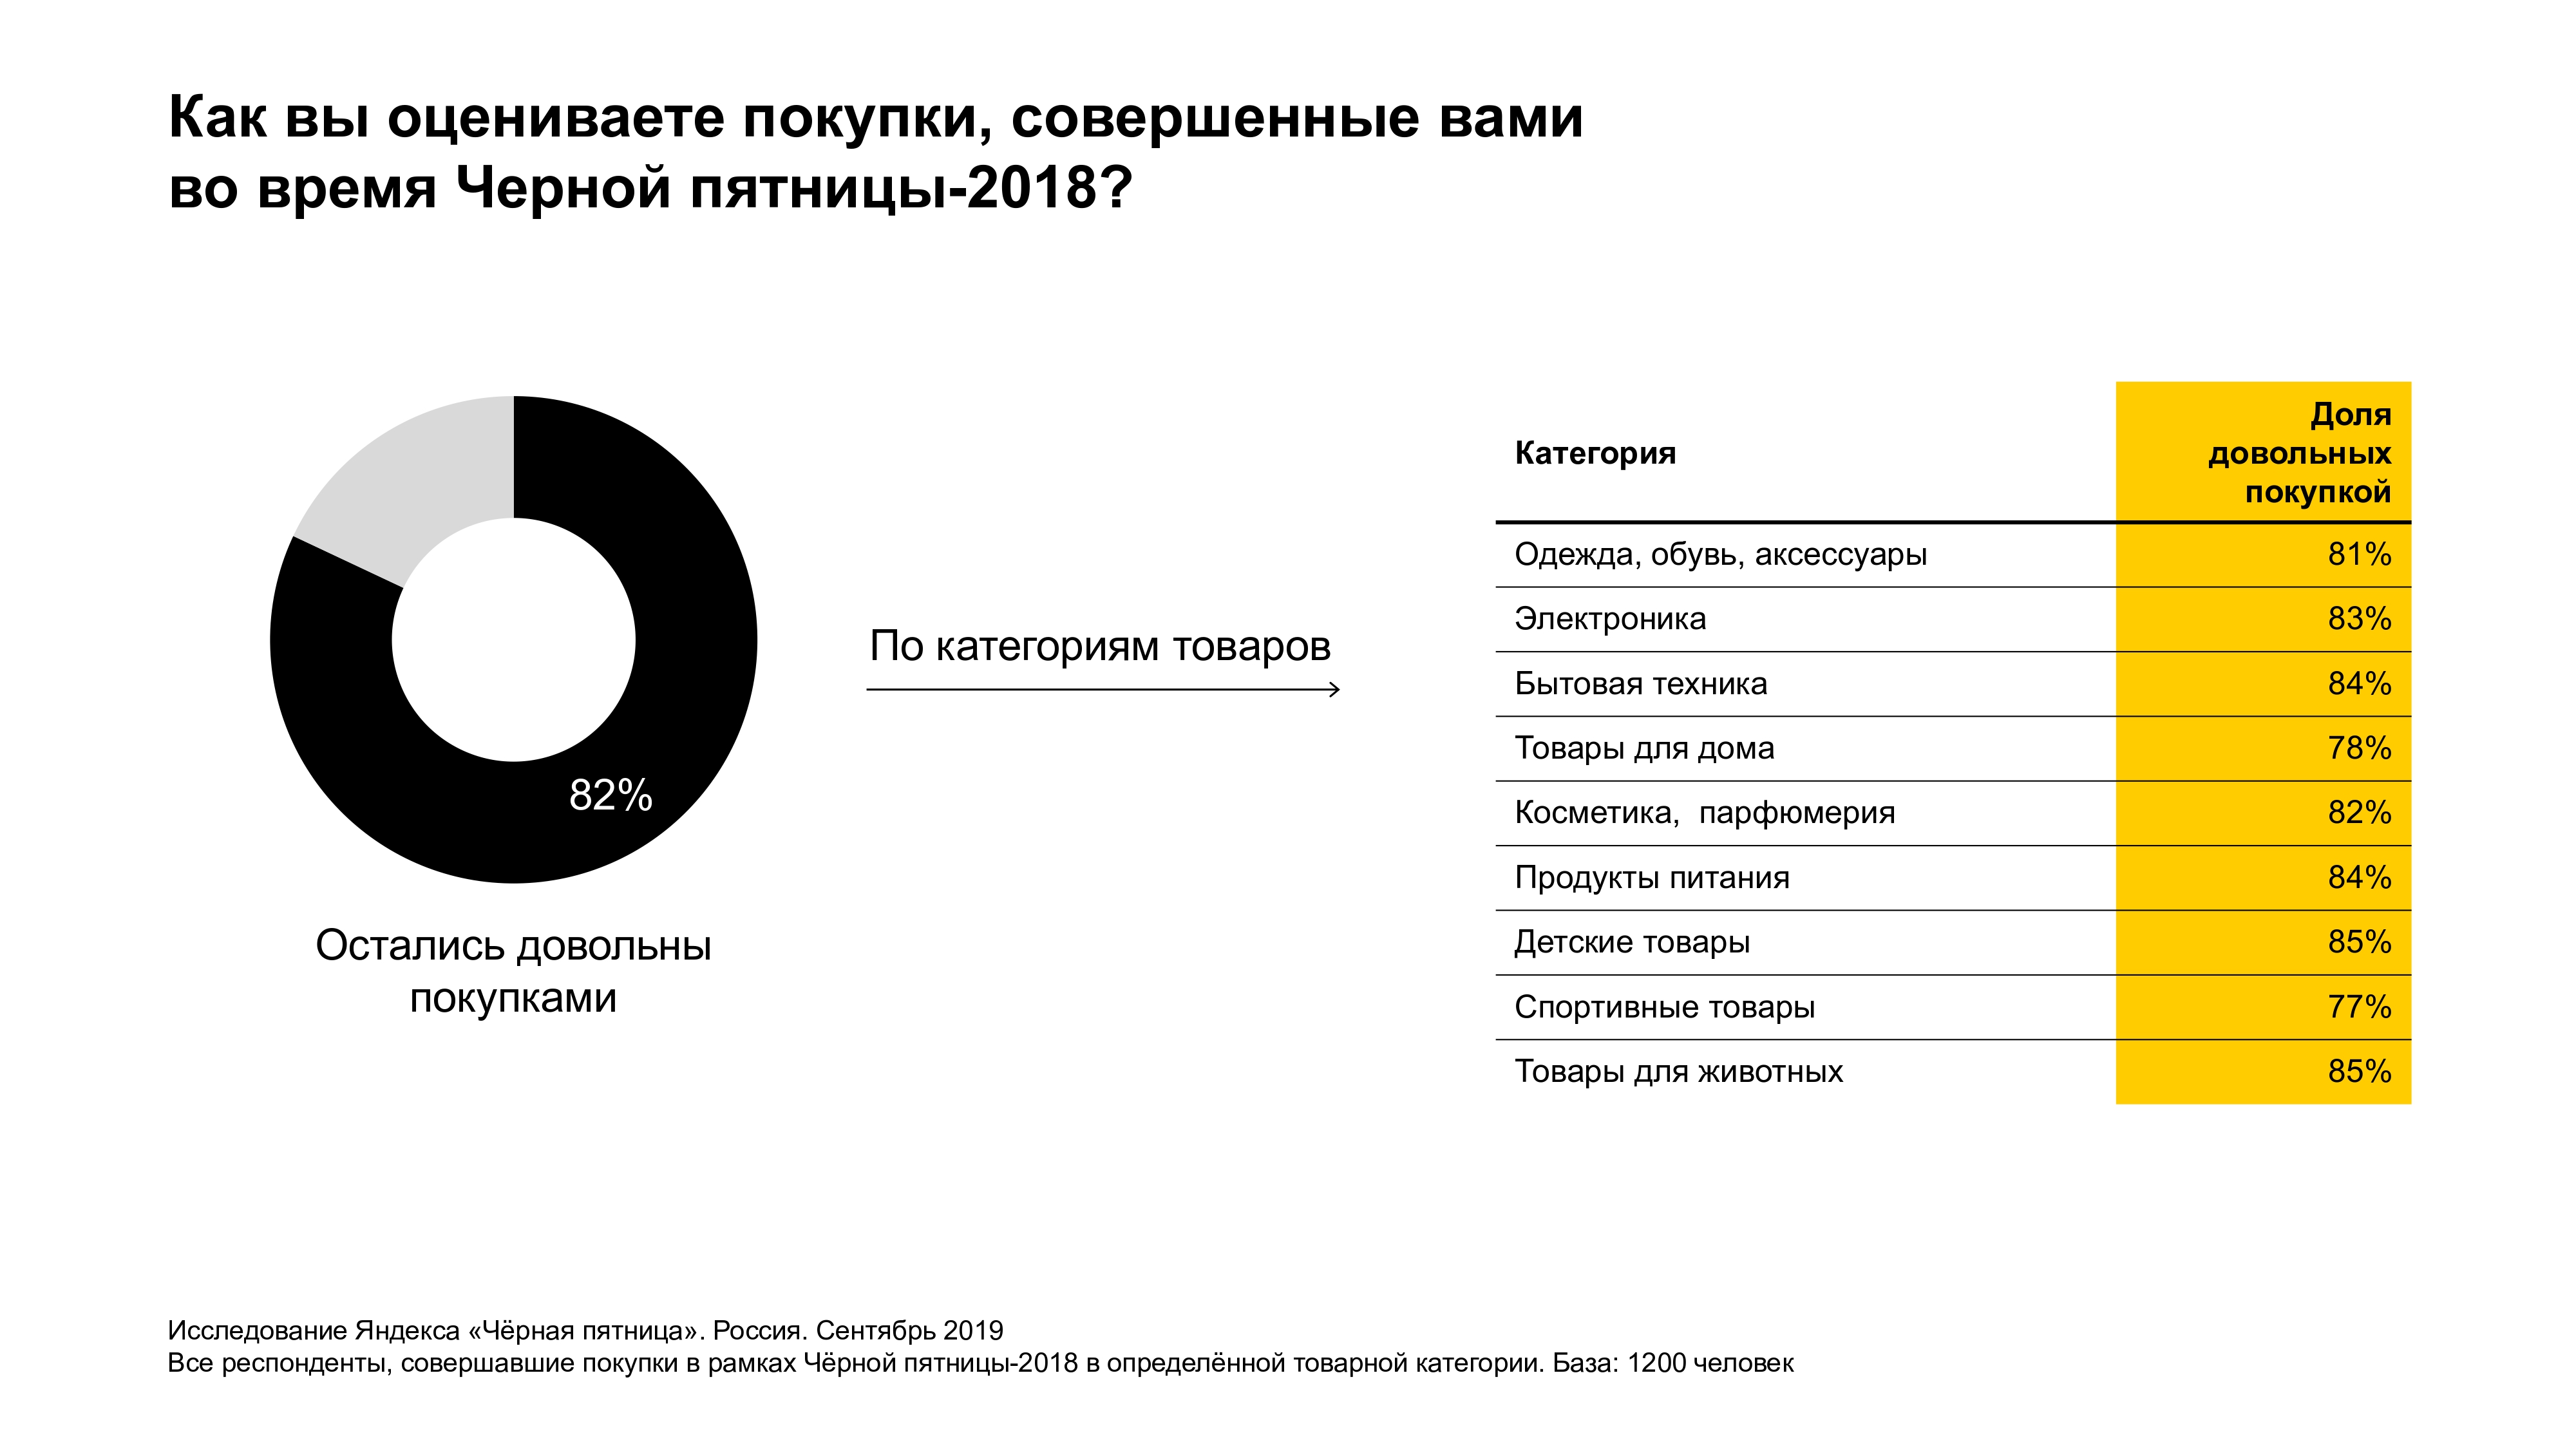 82% респондентов остались довольны своими покупками в Чёрную пятницу 2018 года - Яндекс